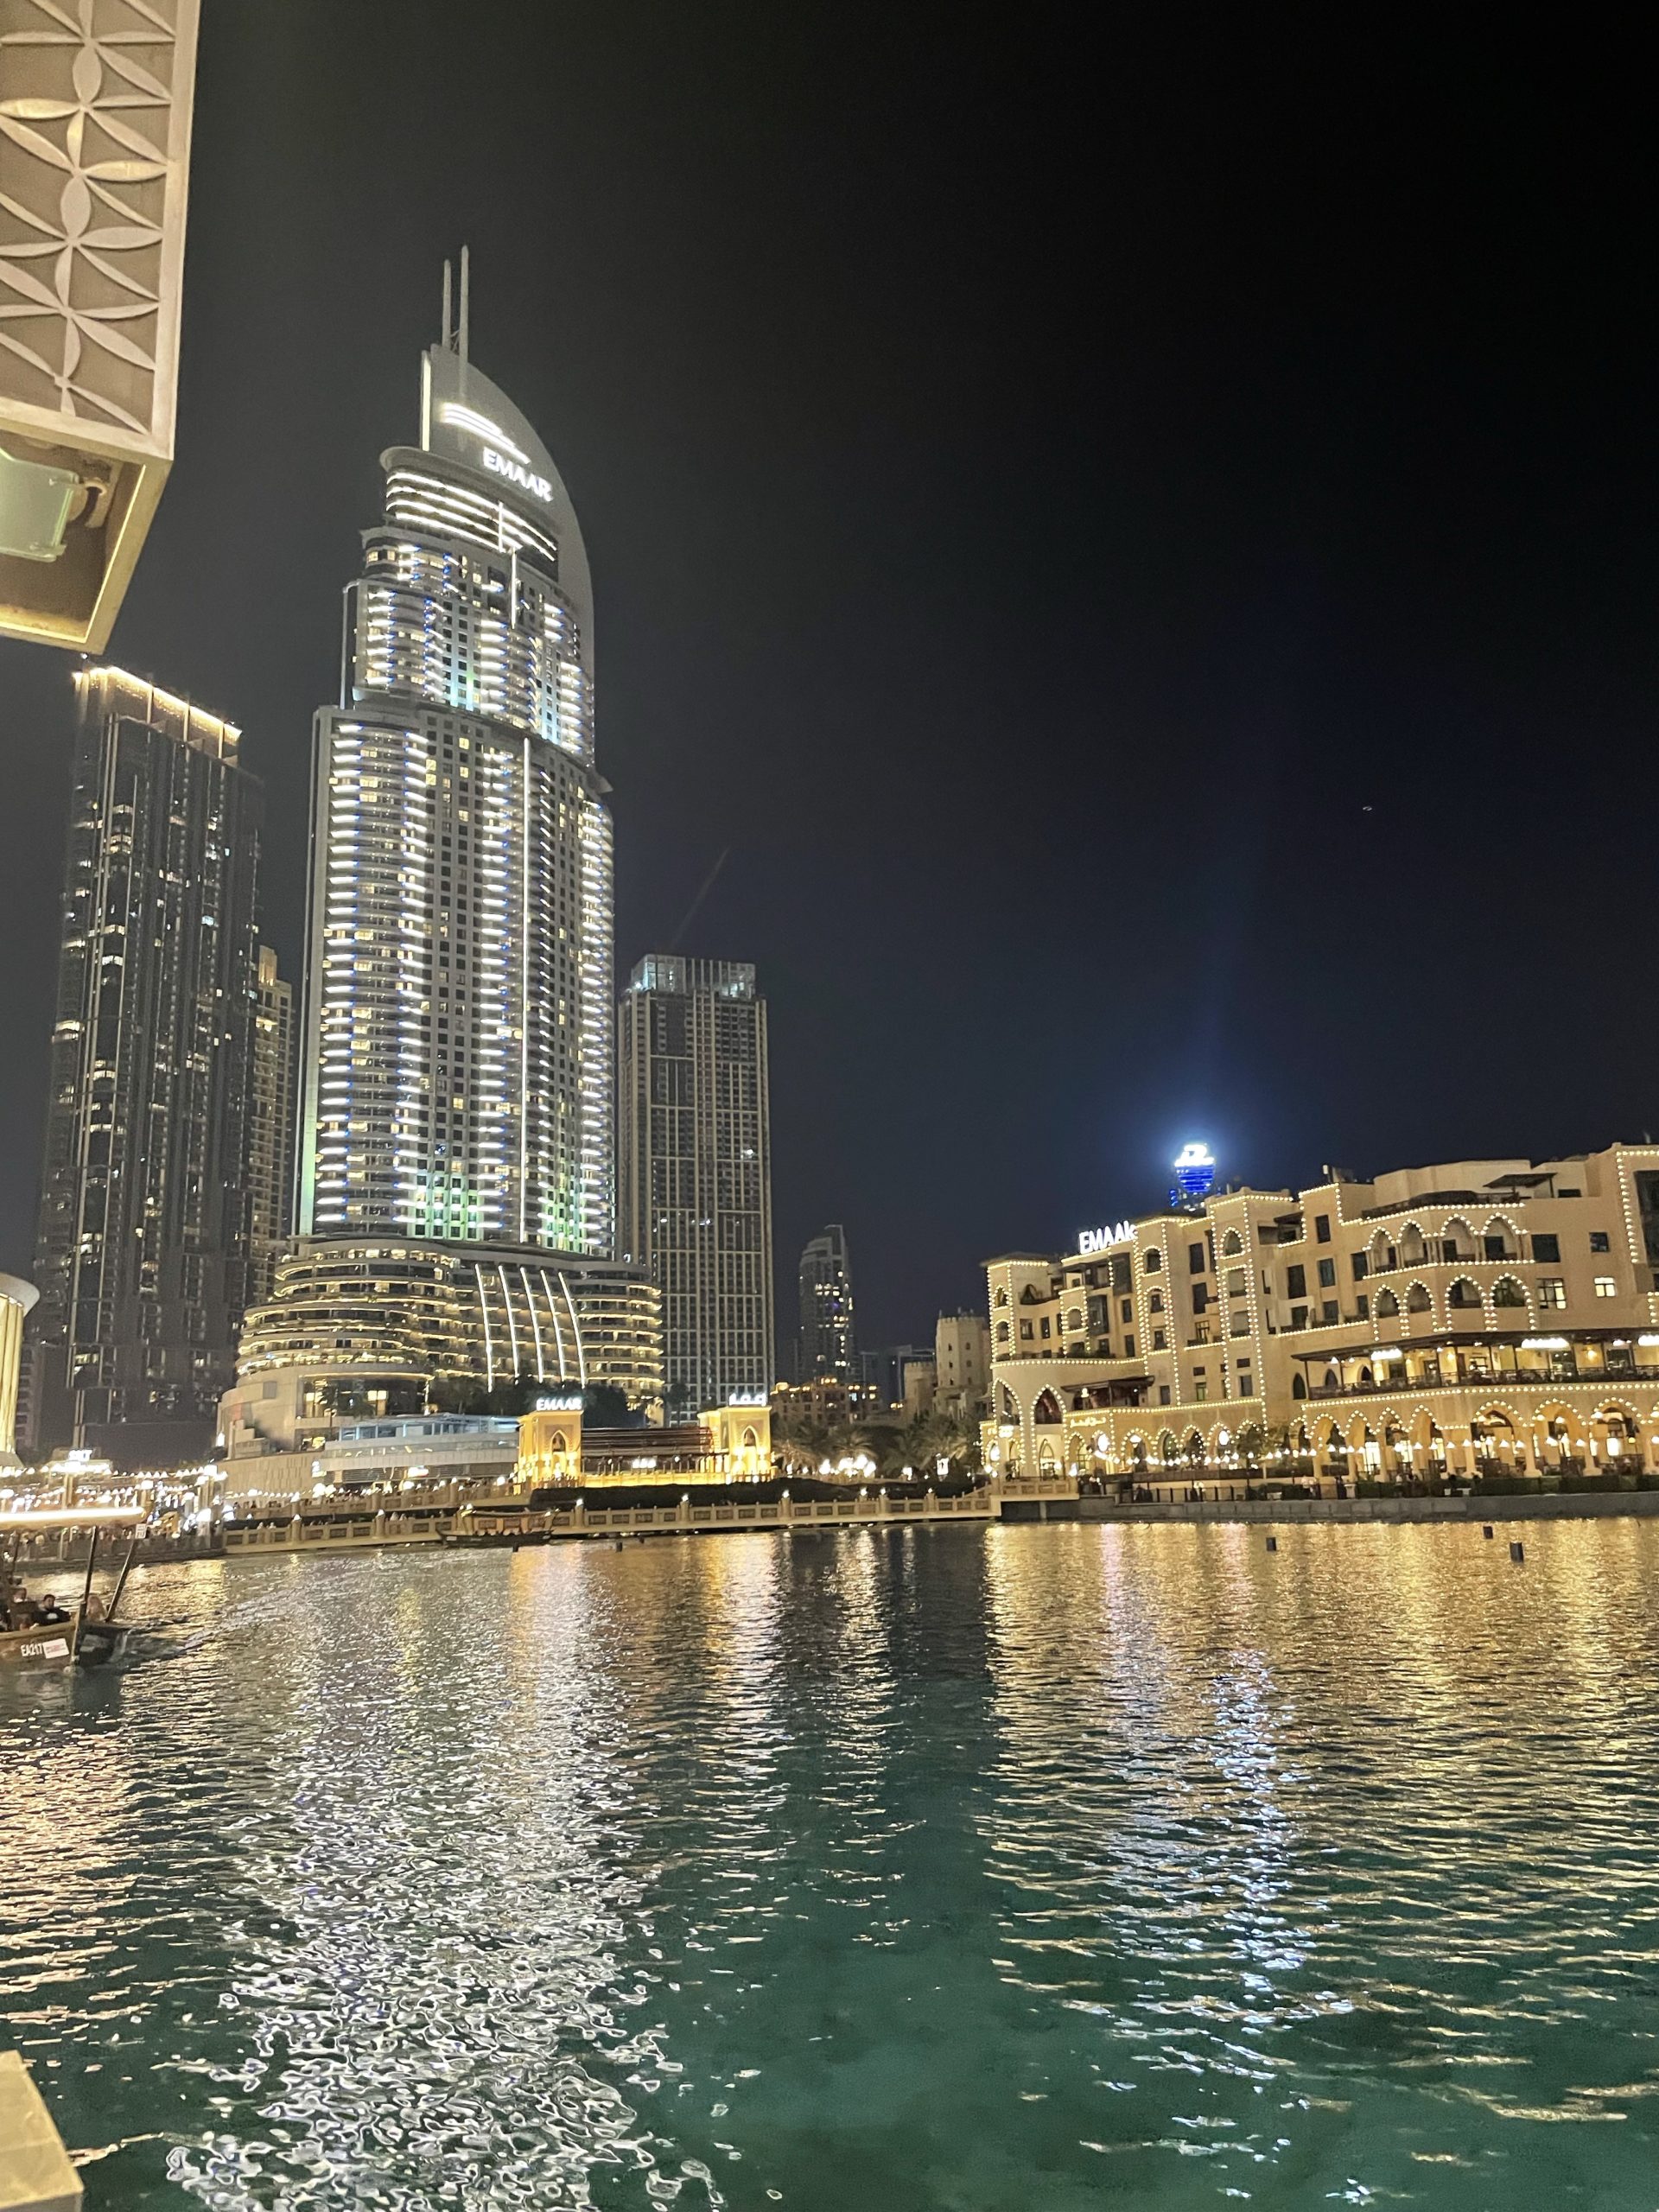 Lac, building éclairé et souk de nuit. Place magnifique situé en bas de la tour Burj Khalifa à Dubai